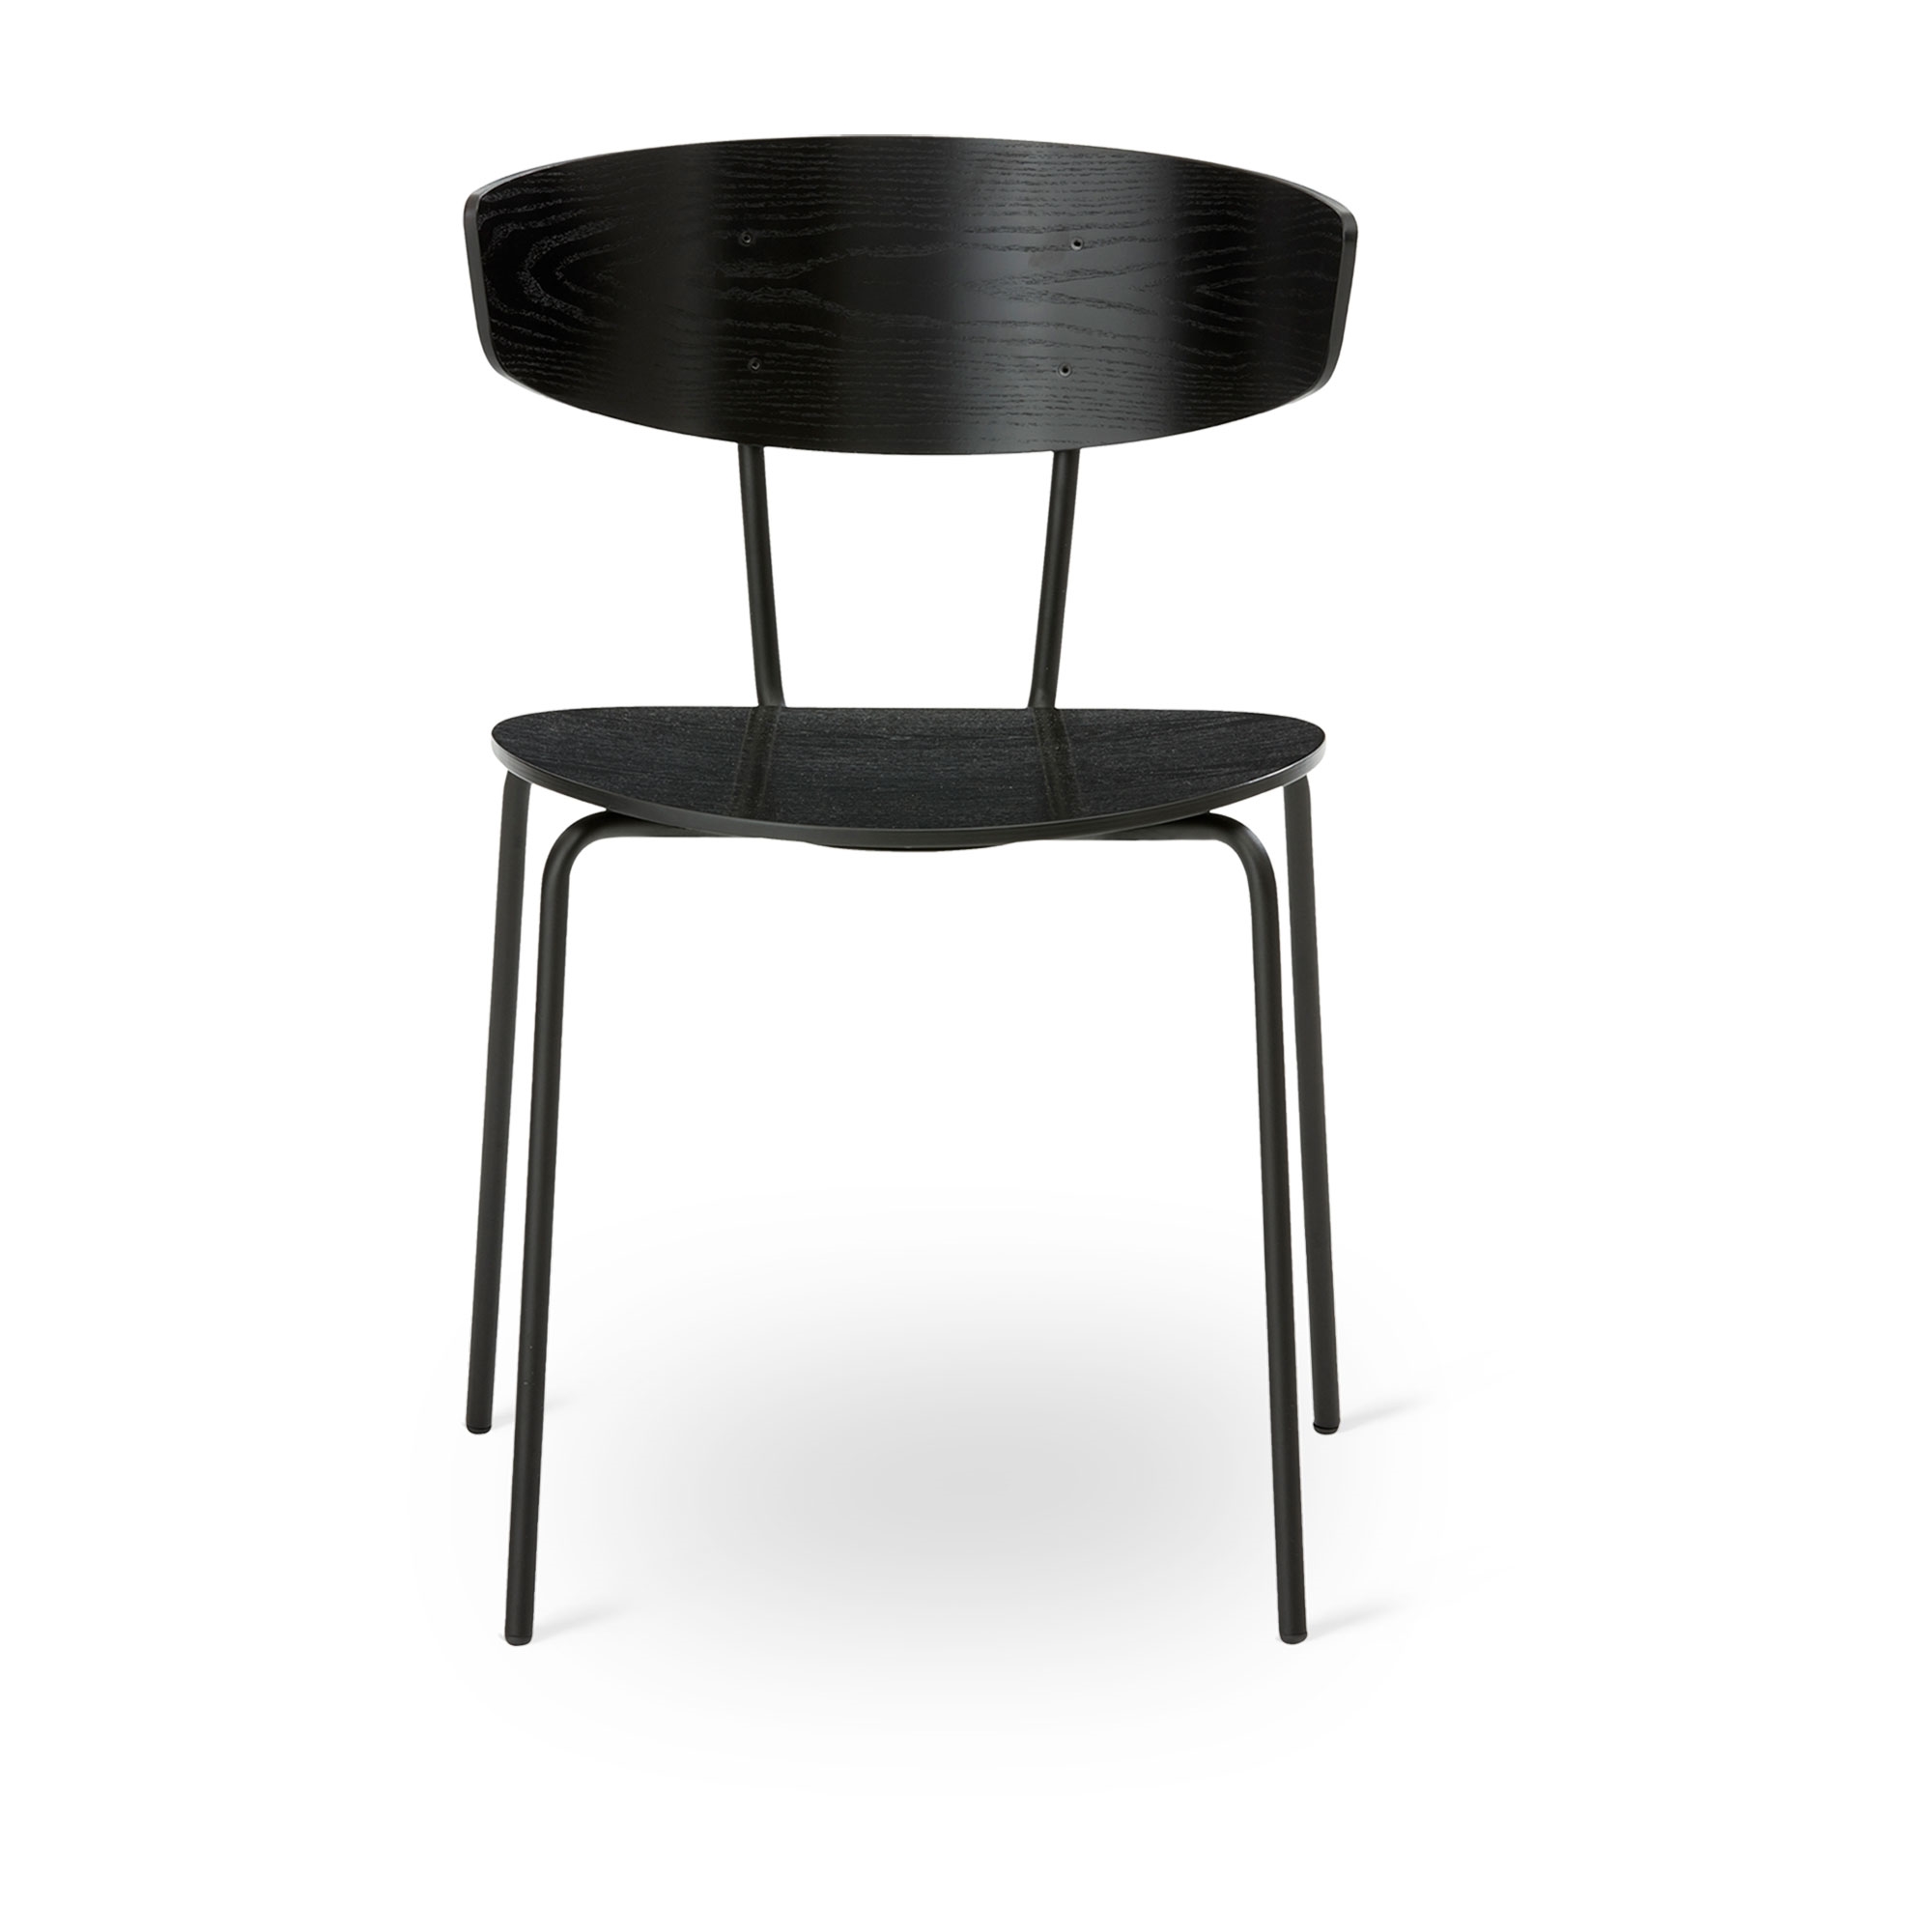 Ferm Living Herman Dining Chair Black/ Black